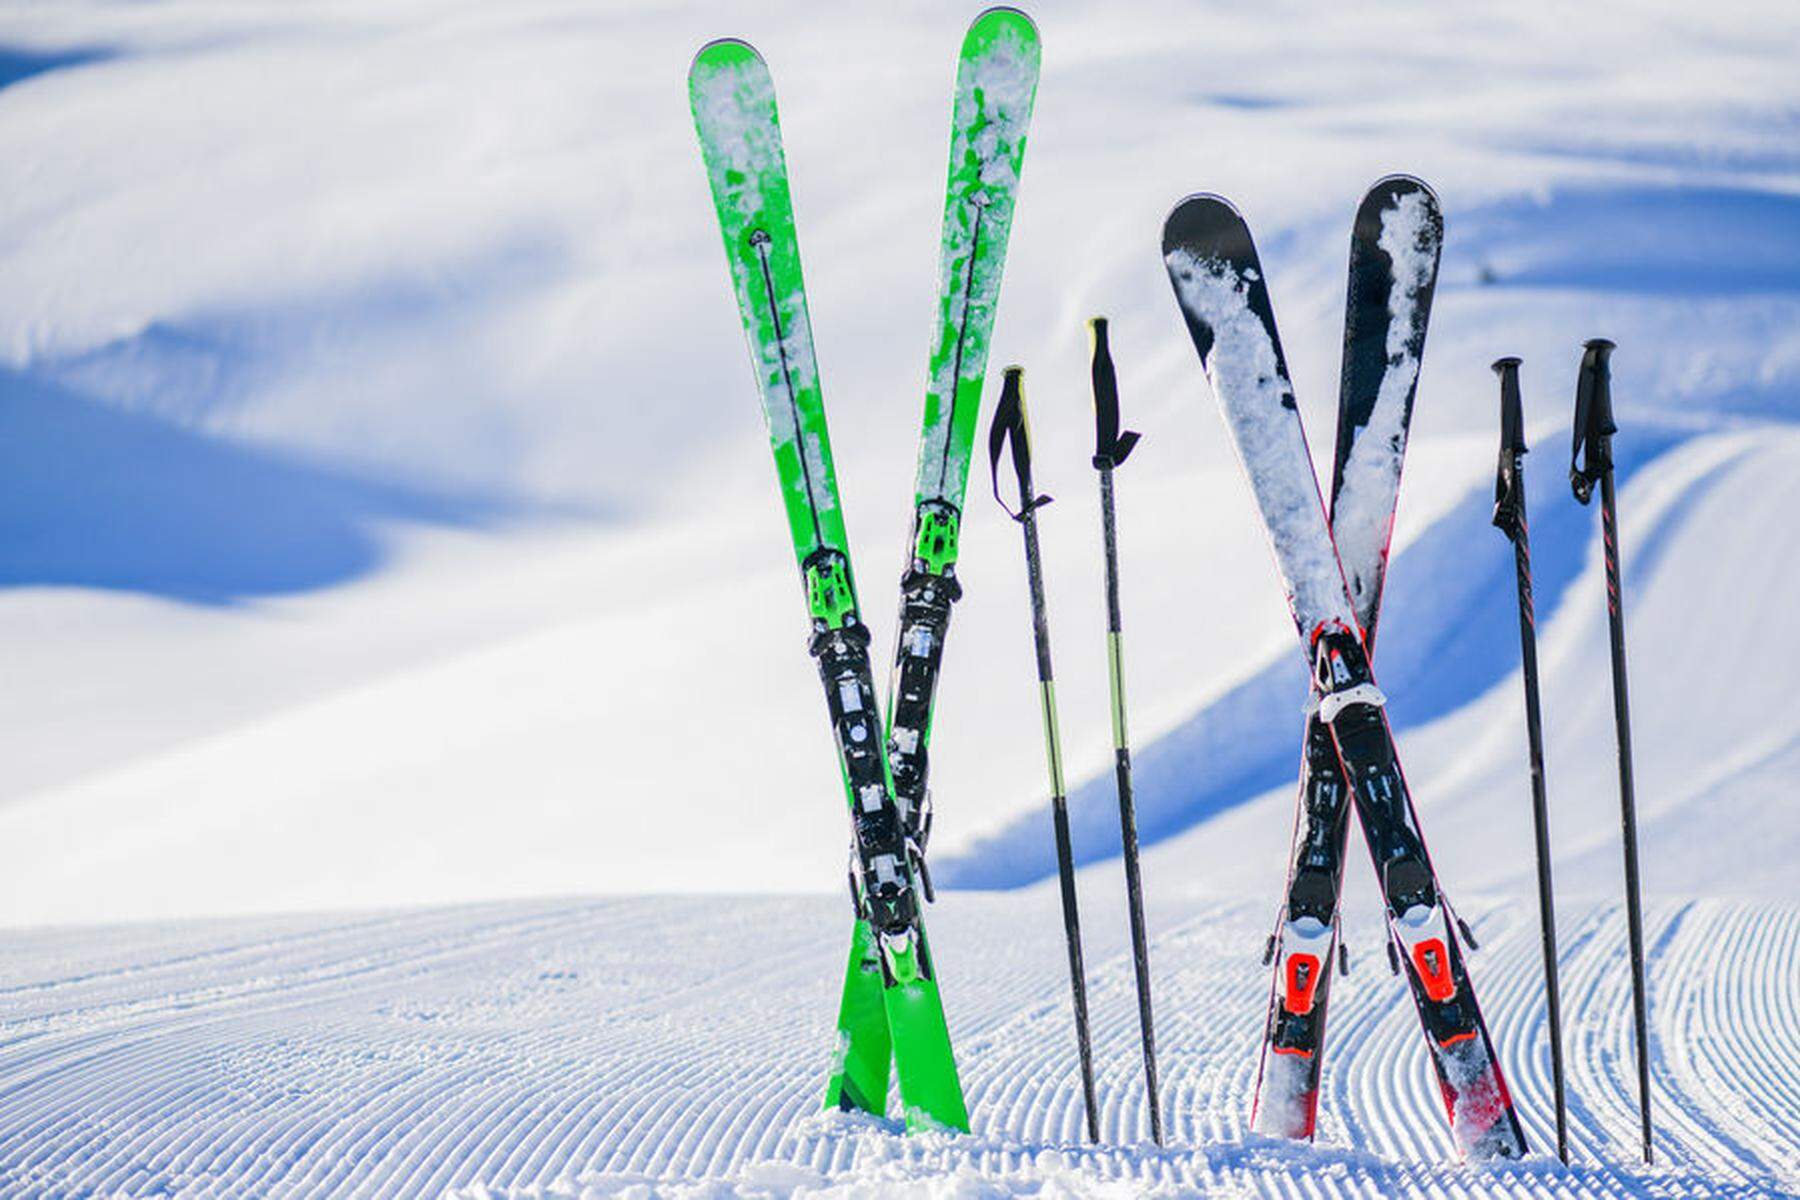 Regionale Skigebiete: „Perfekte Schneelage“ trifft auf vorzeitig geschlossene Pisten